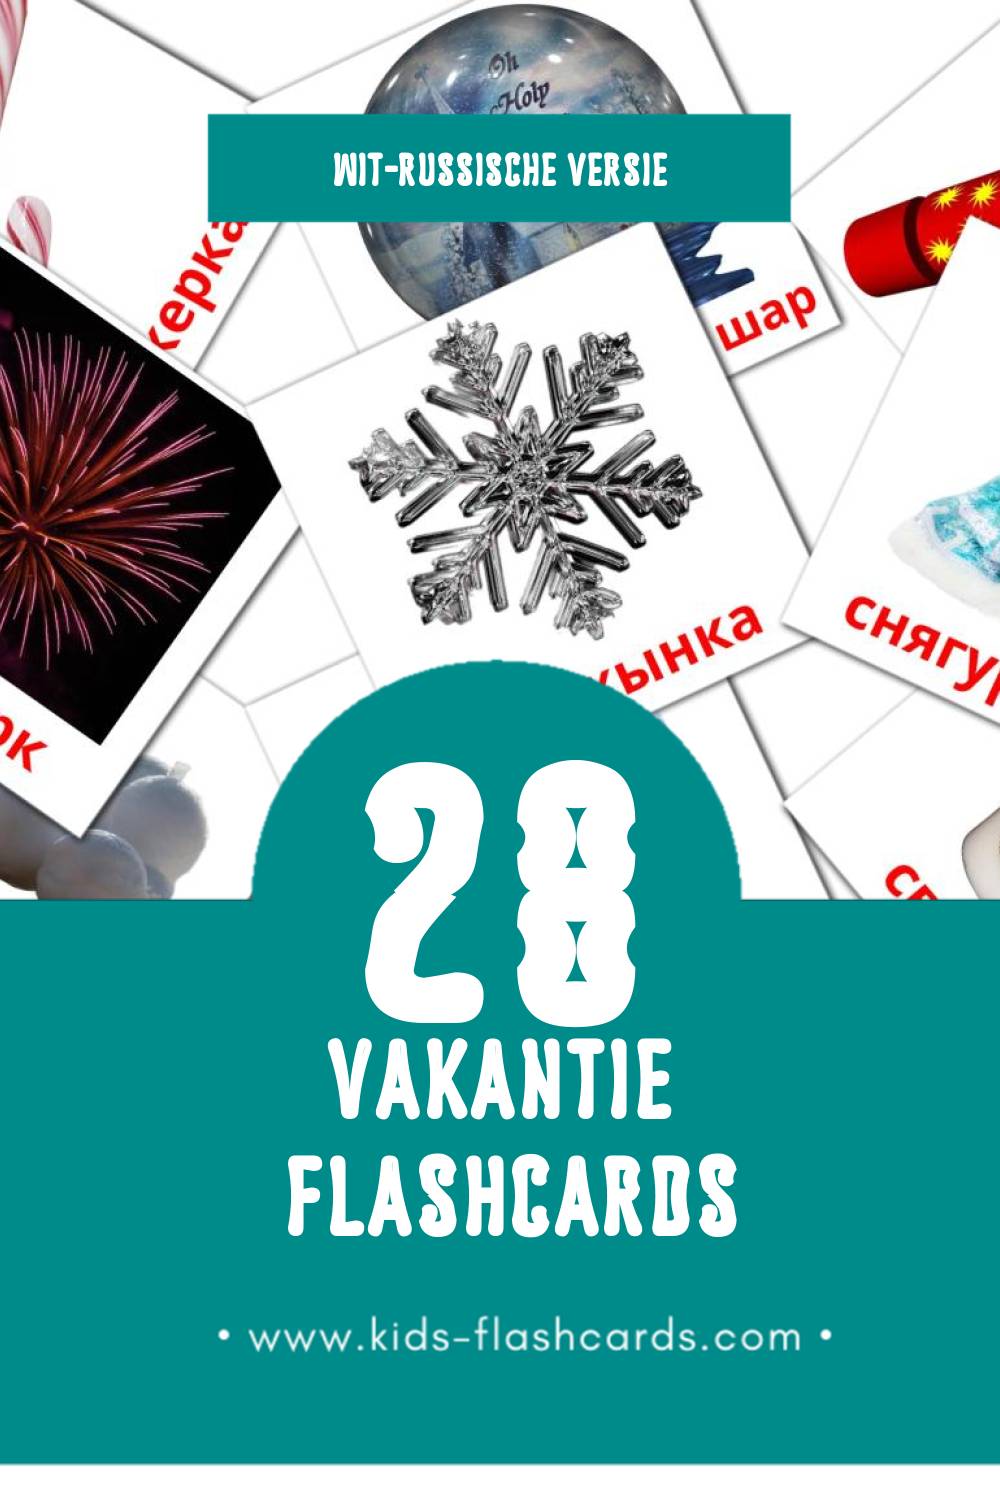 Visuele Святы Flashcards voor Kleuters (28 kaarten in het Wit-russisch)